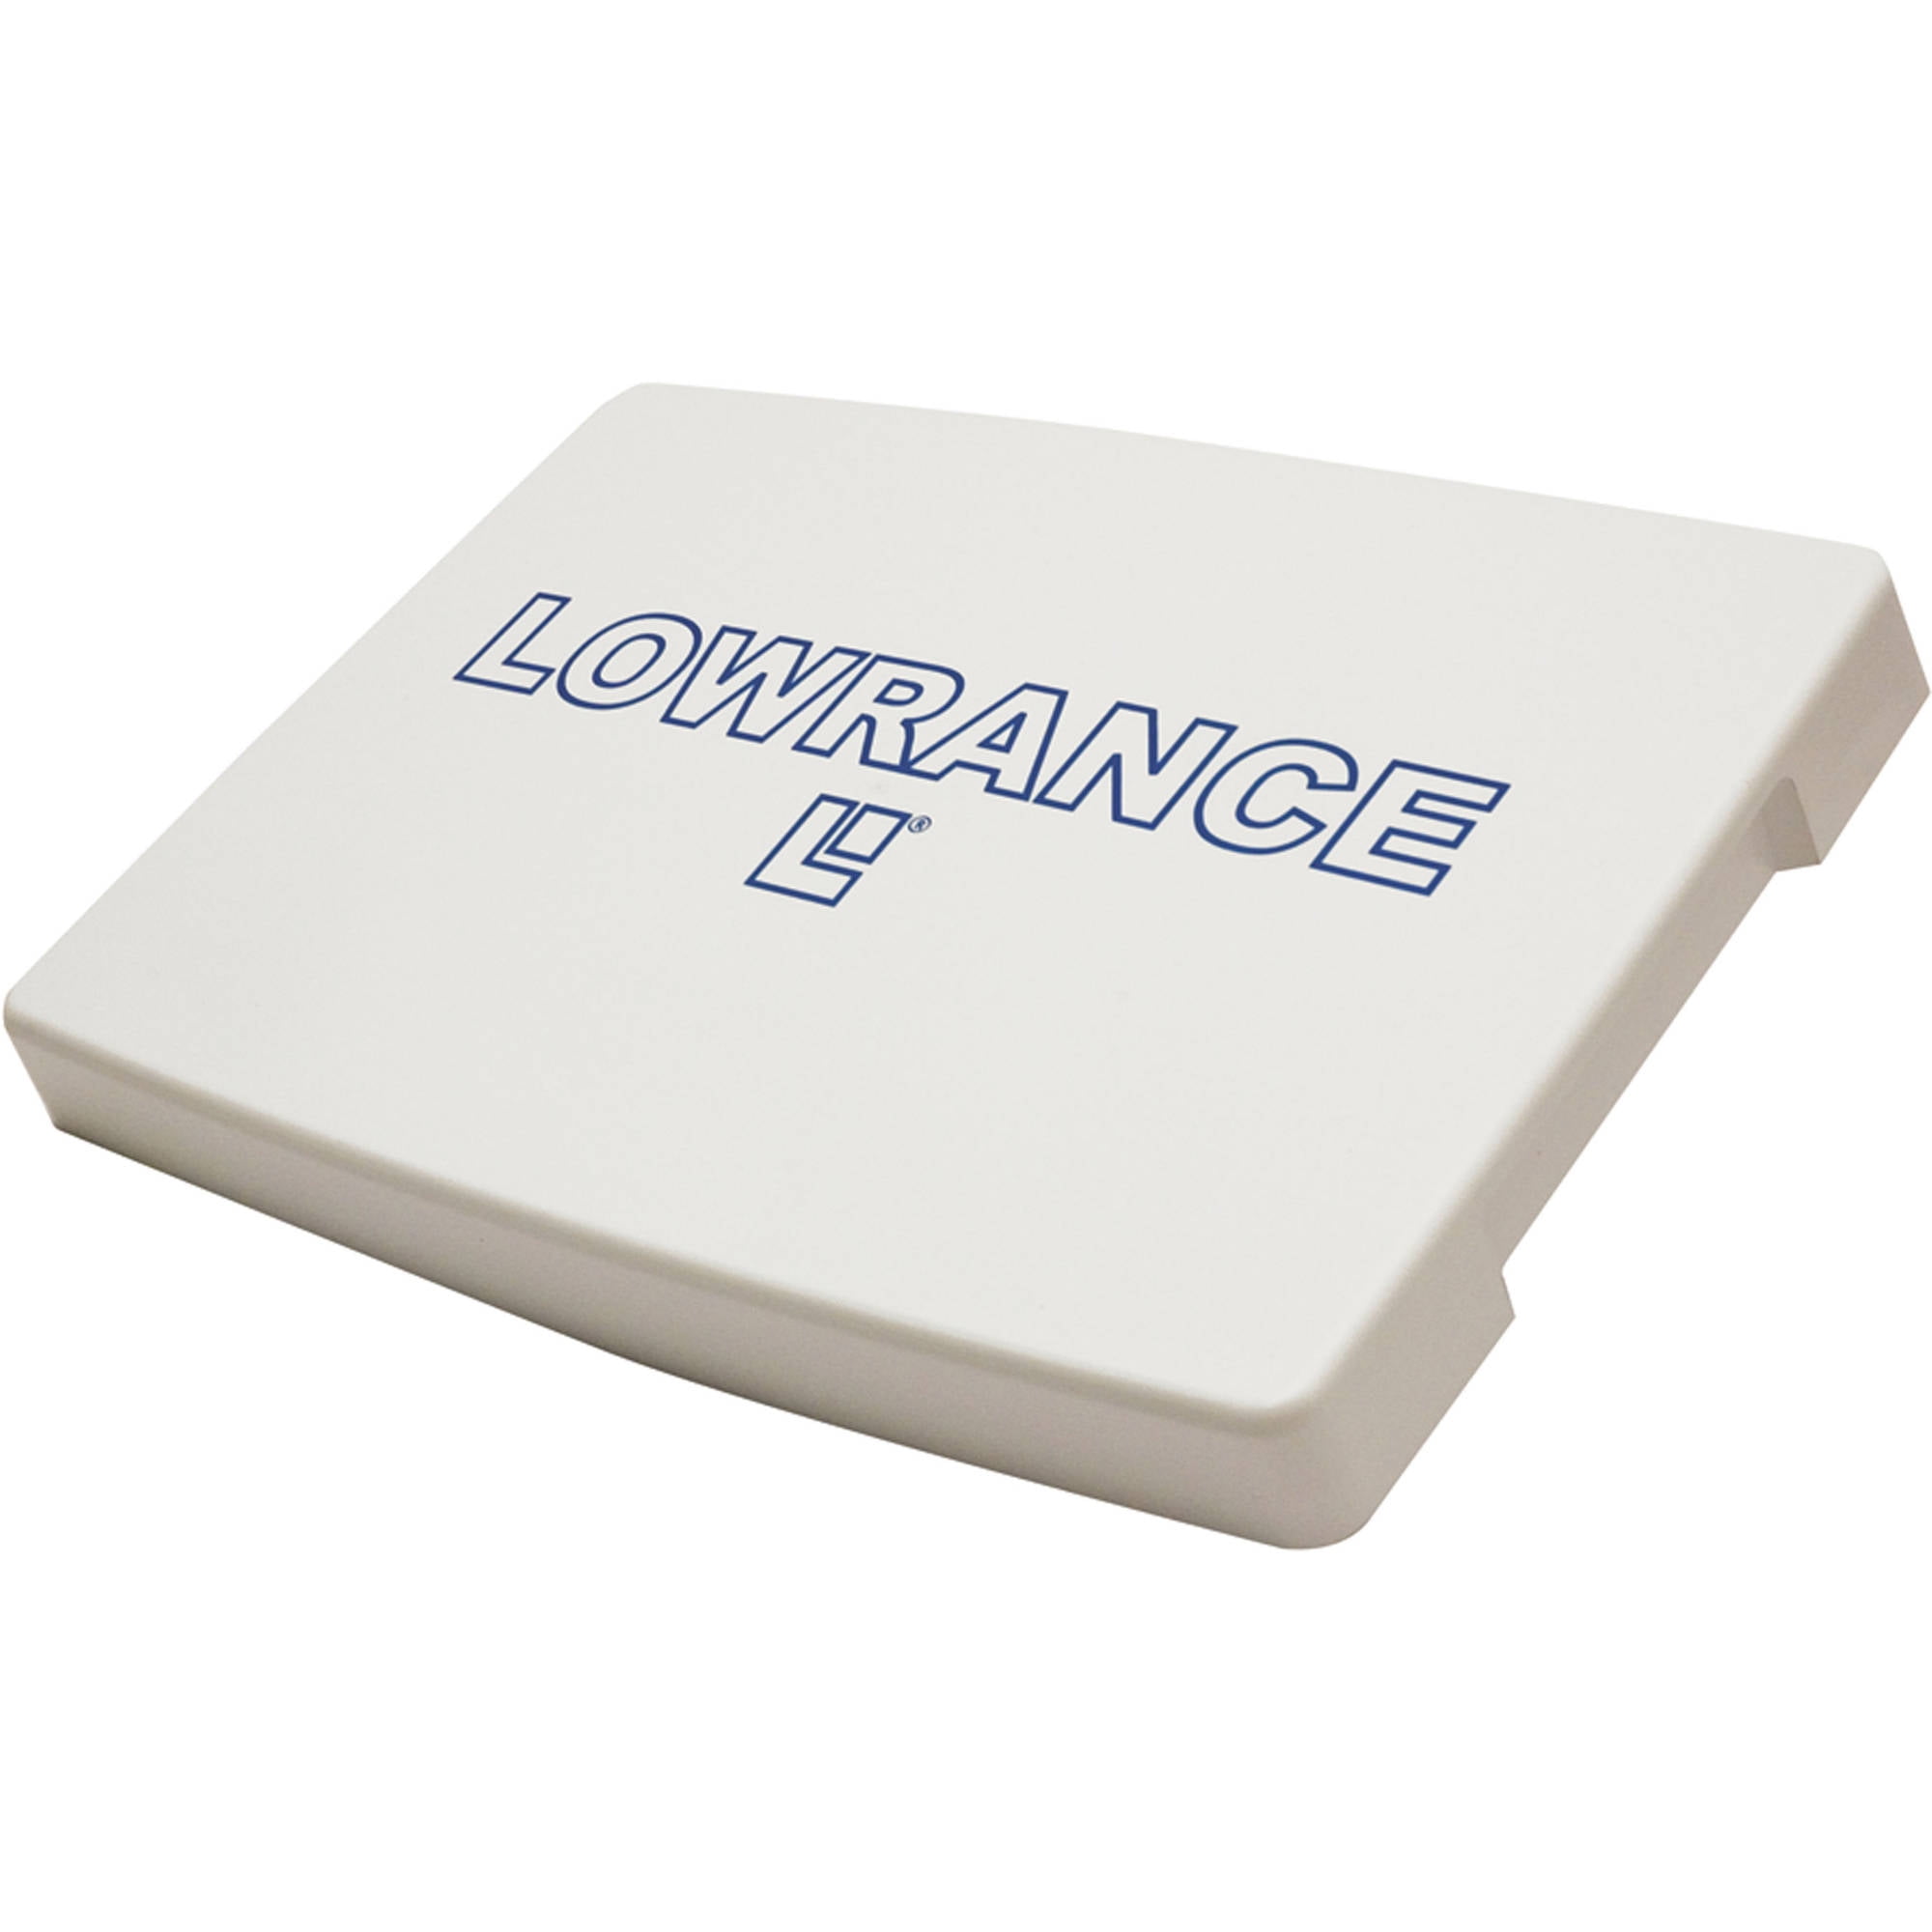 Lowrance 000-10001-001 CVR-12 Sun Cover for LVR250 